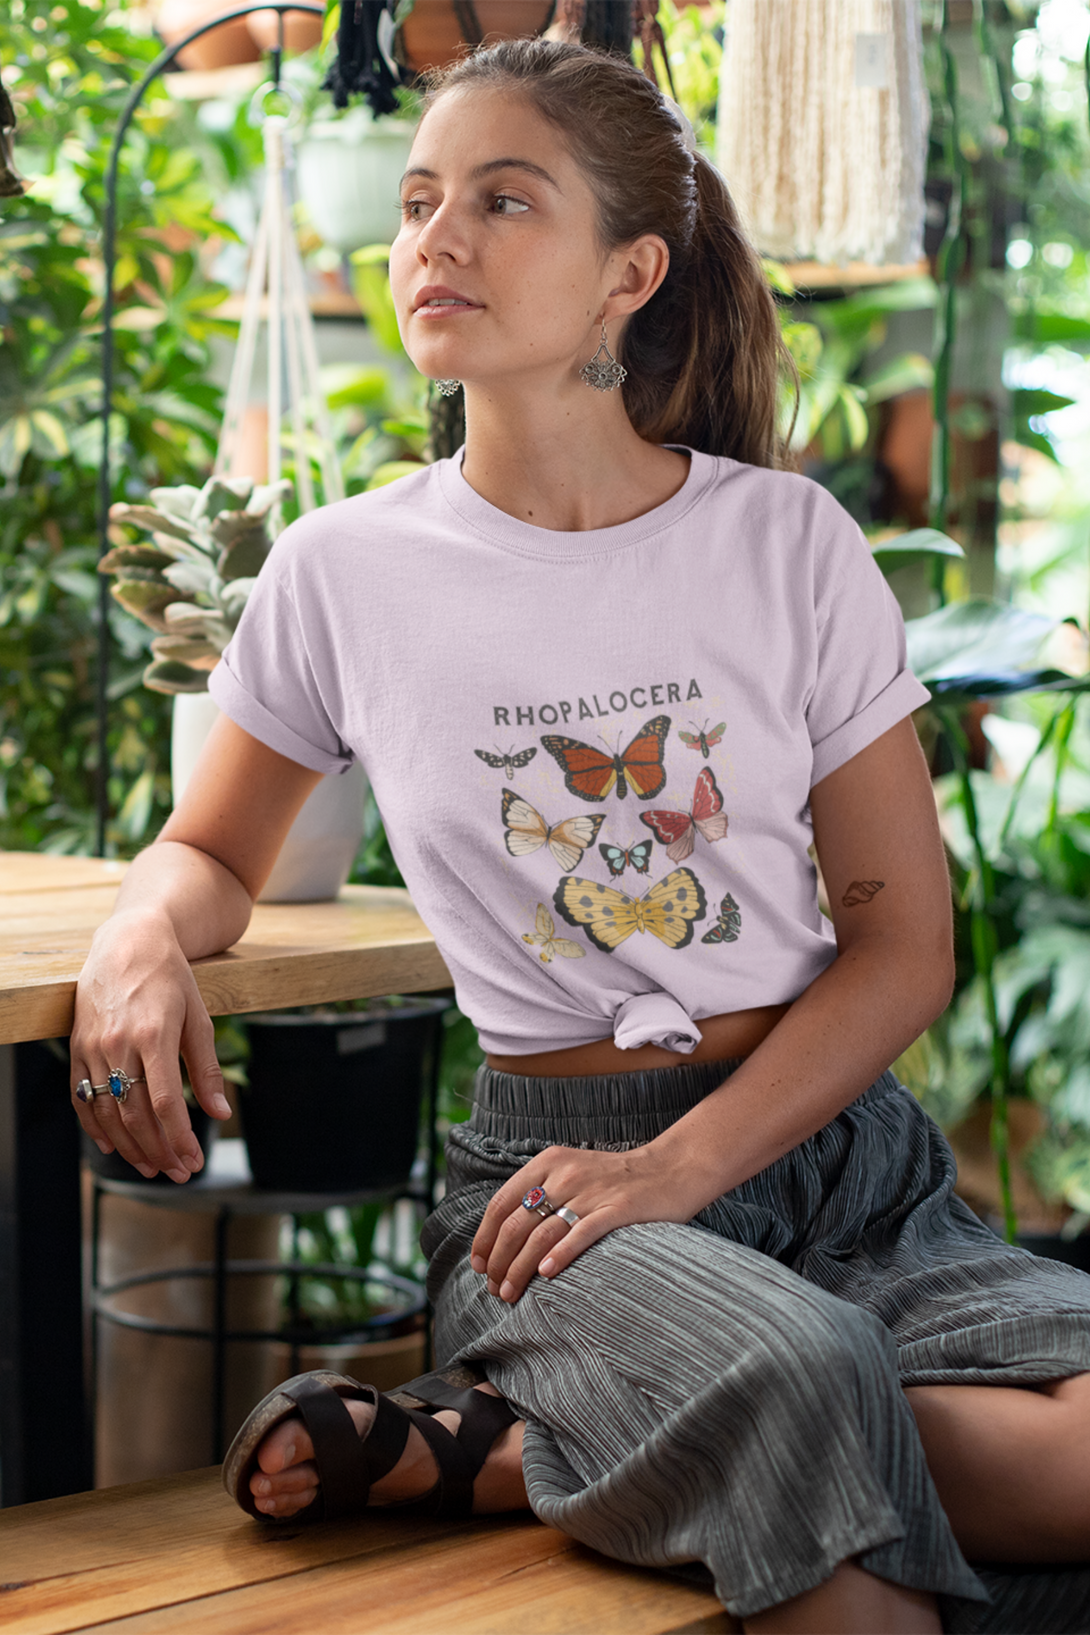 Rhopalocera Printed T-Shirt For Women - WowWaves